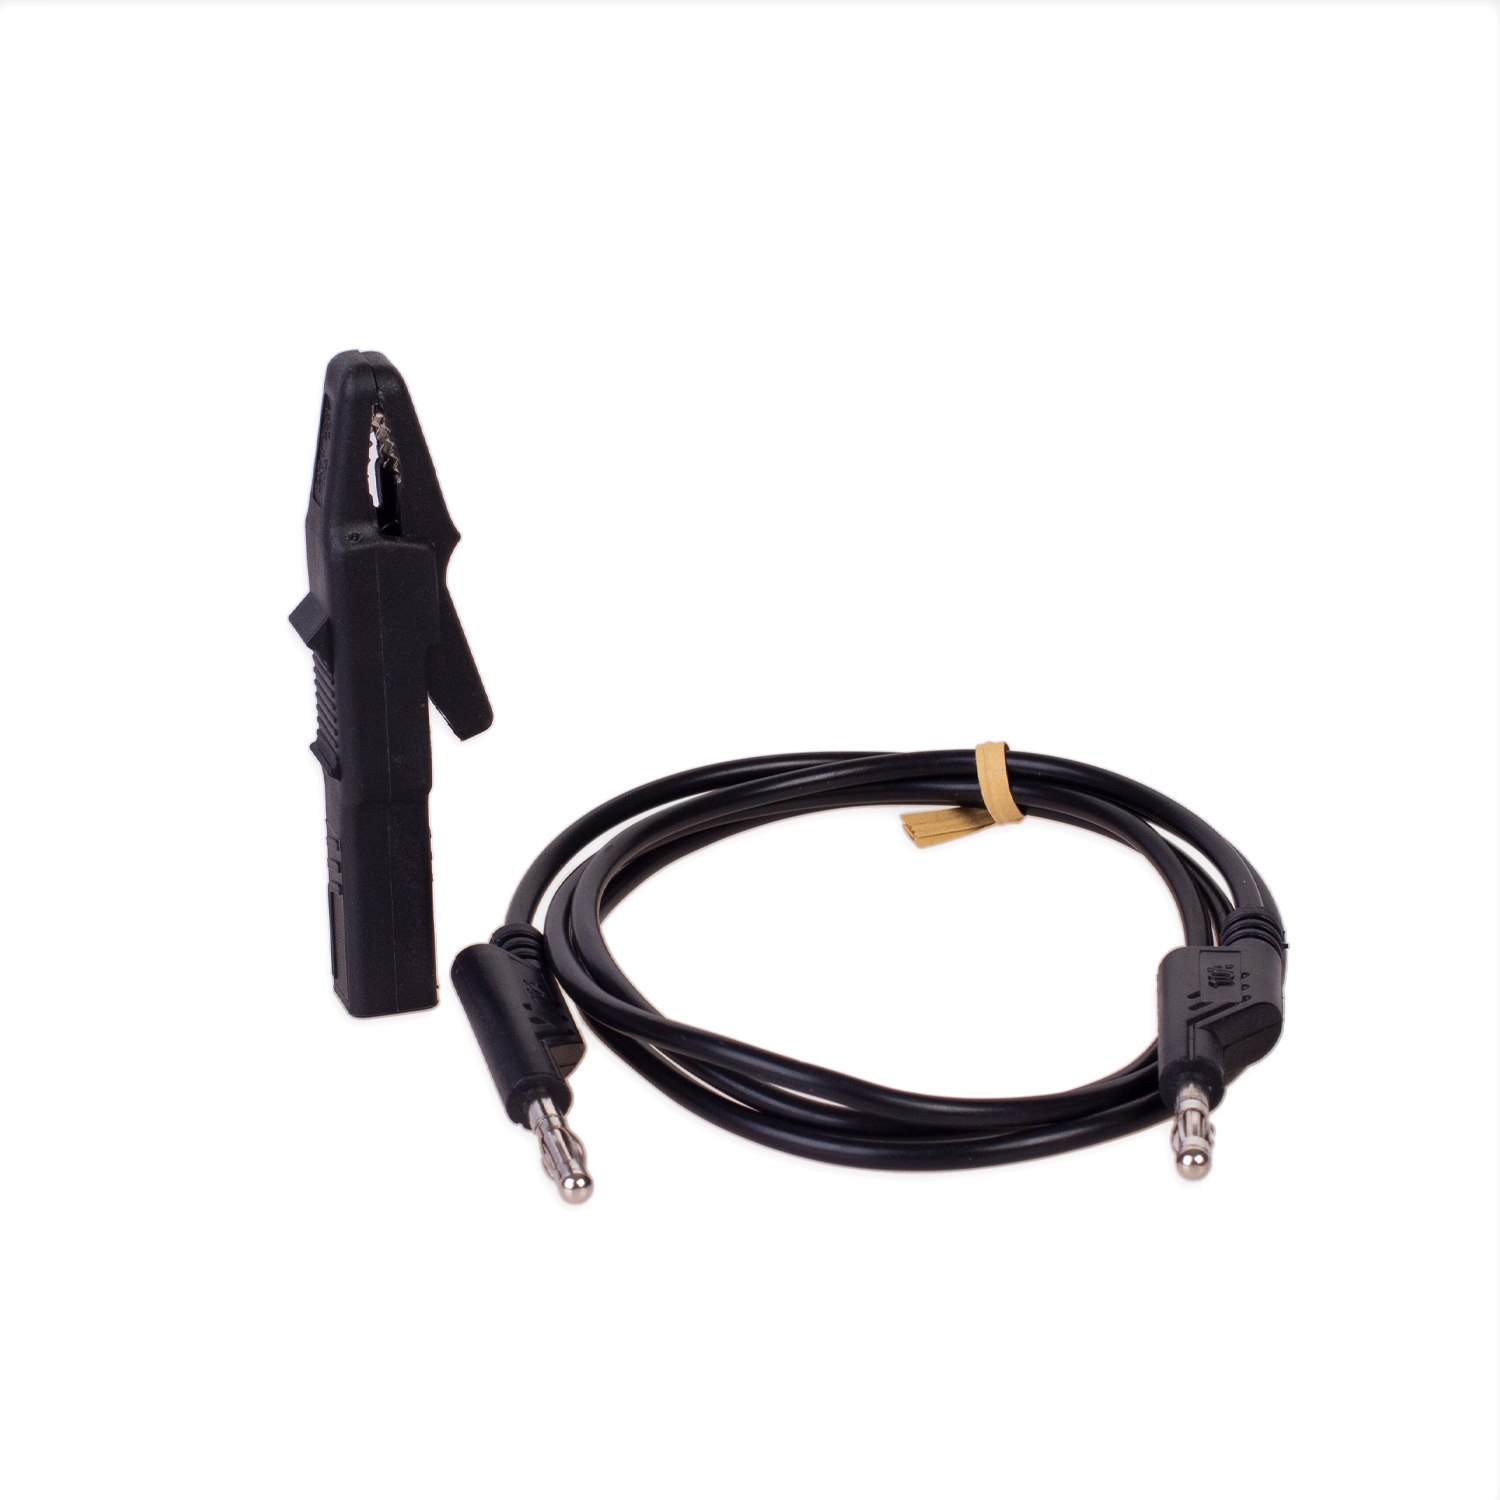 Cable negro con abrazadera para RMgo! / RM01